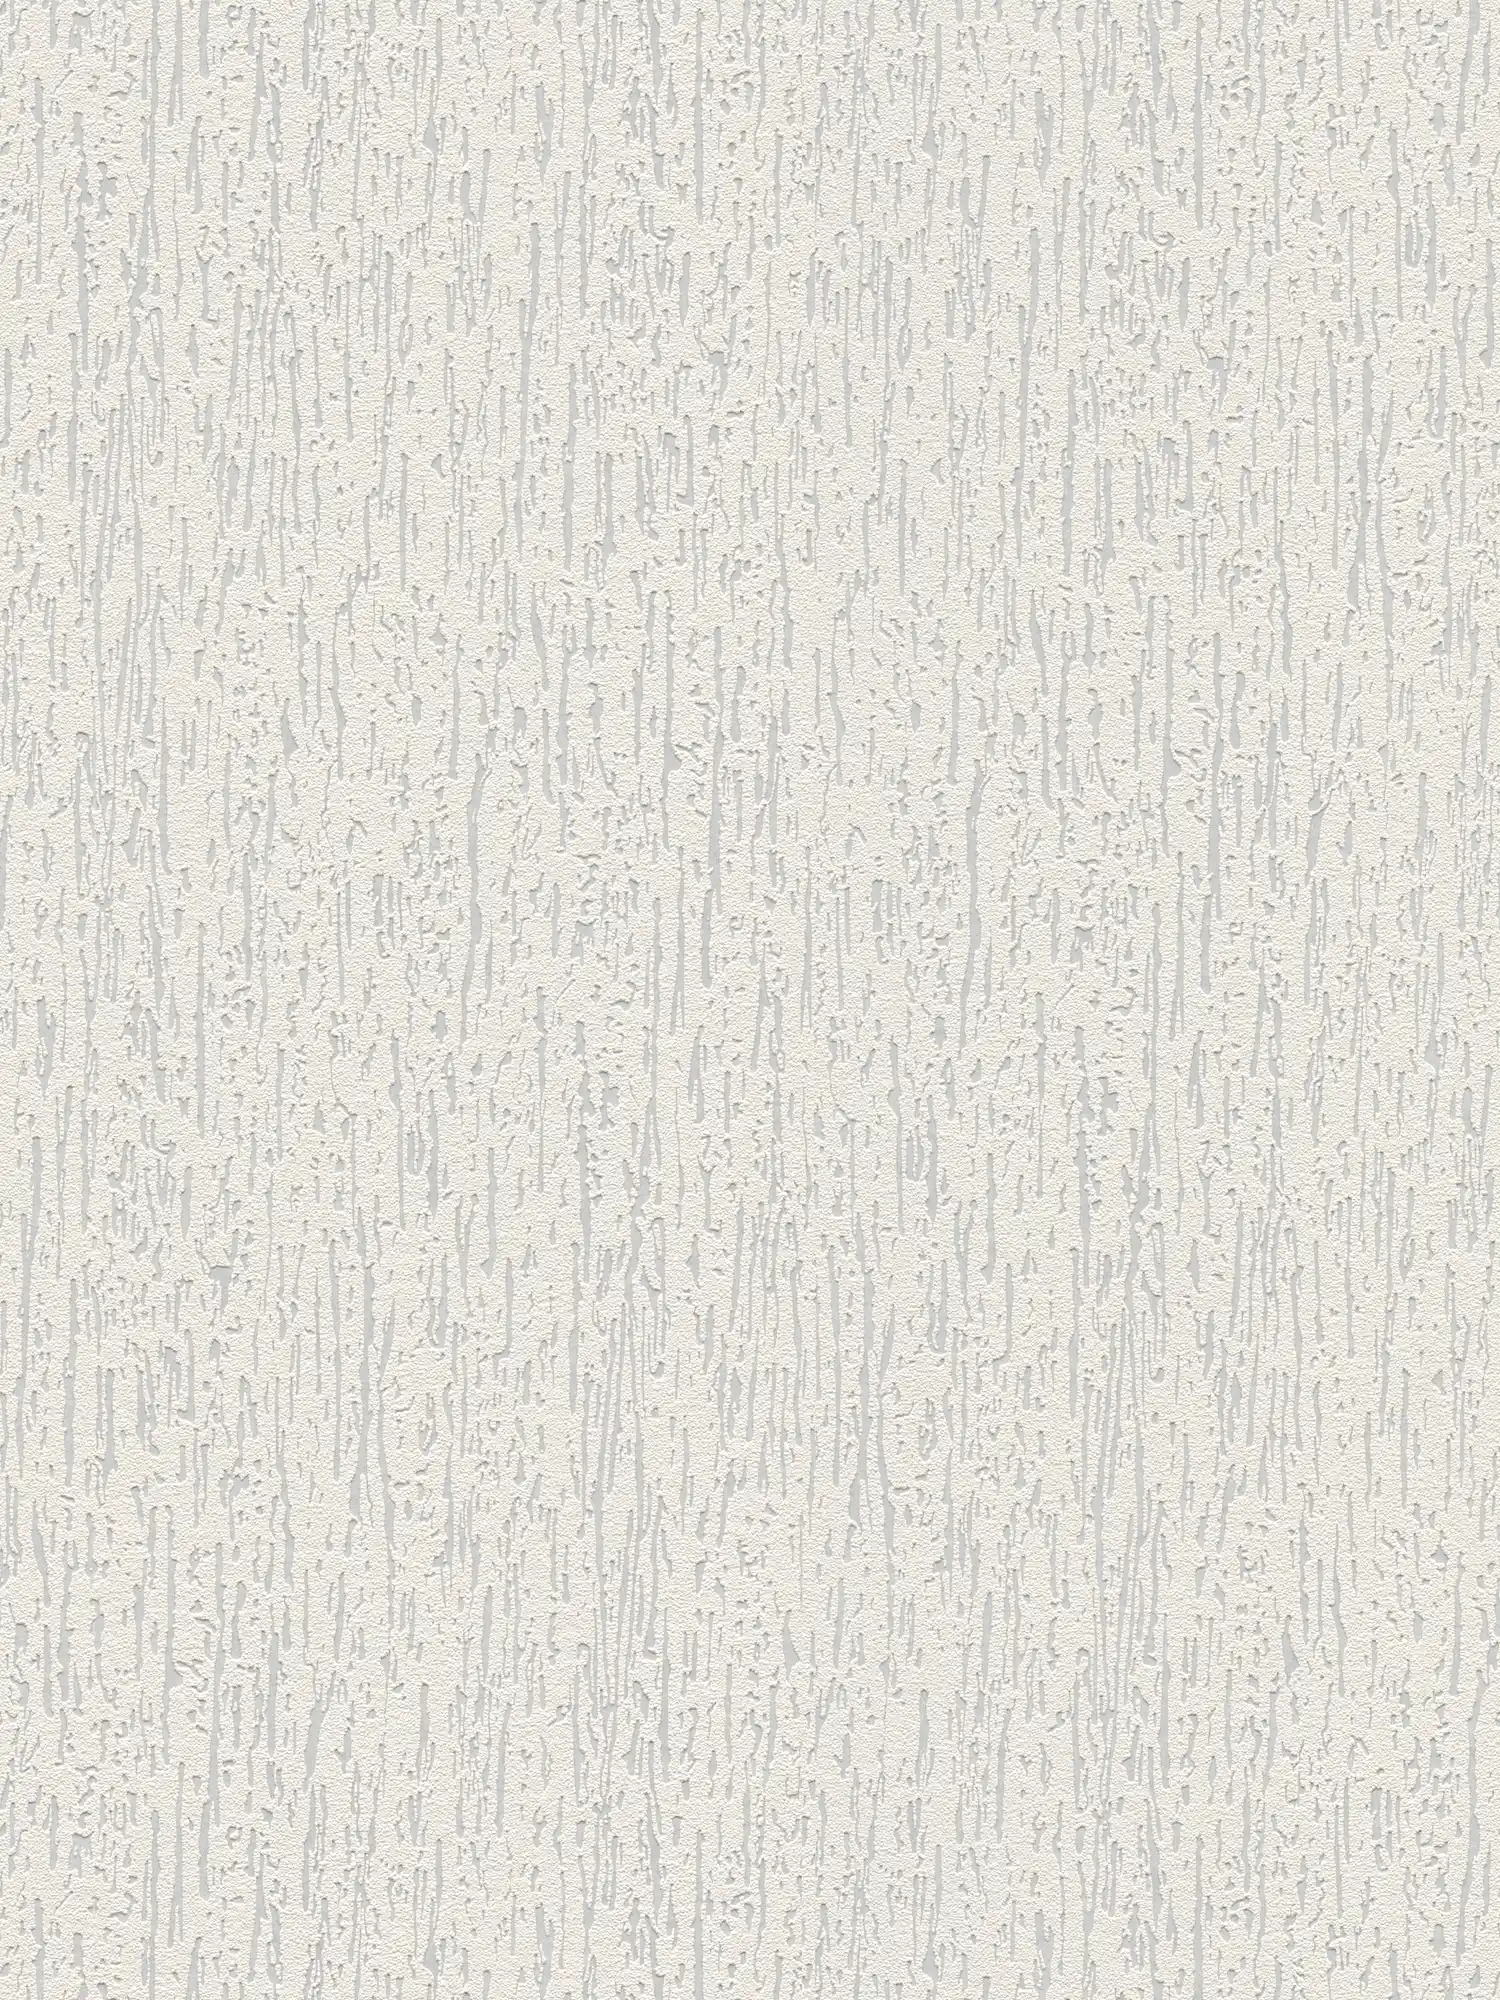 Overschilderbaar vliesbehang in ruwbouwlook - overschilderbaar, wit
